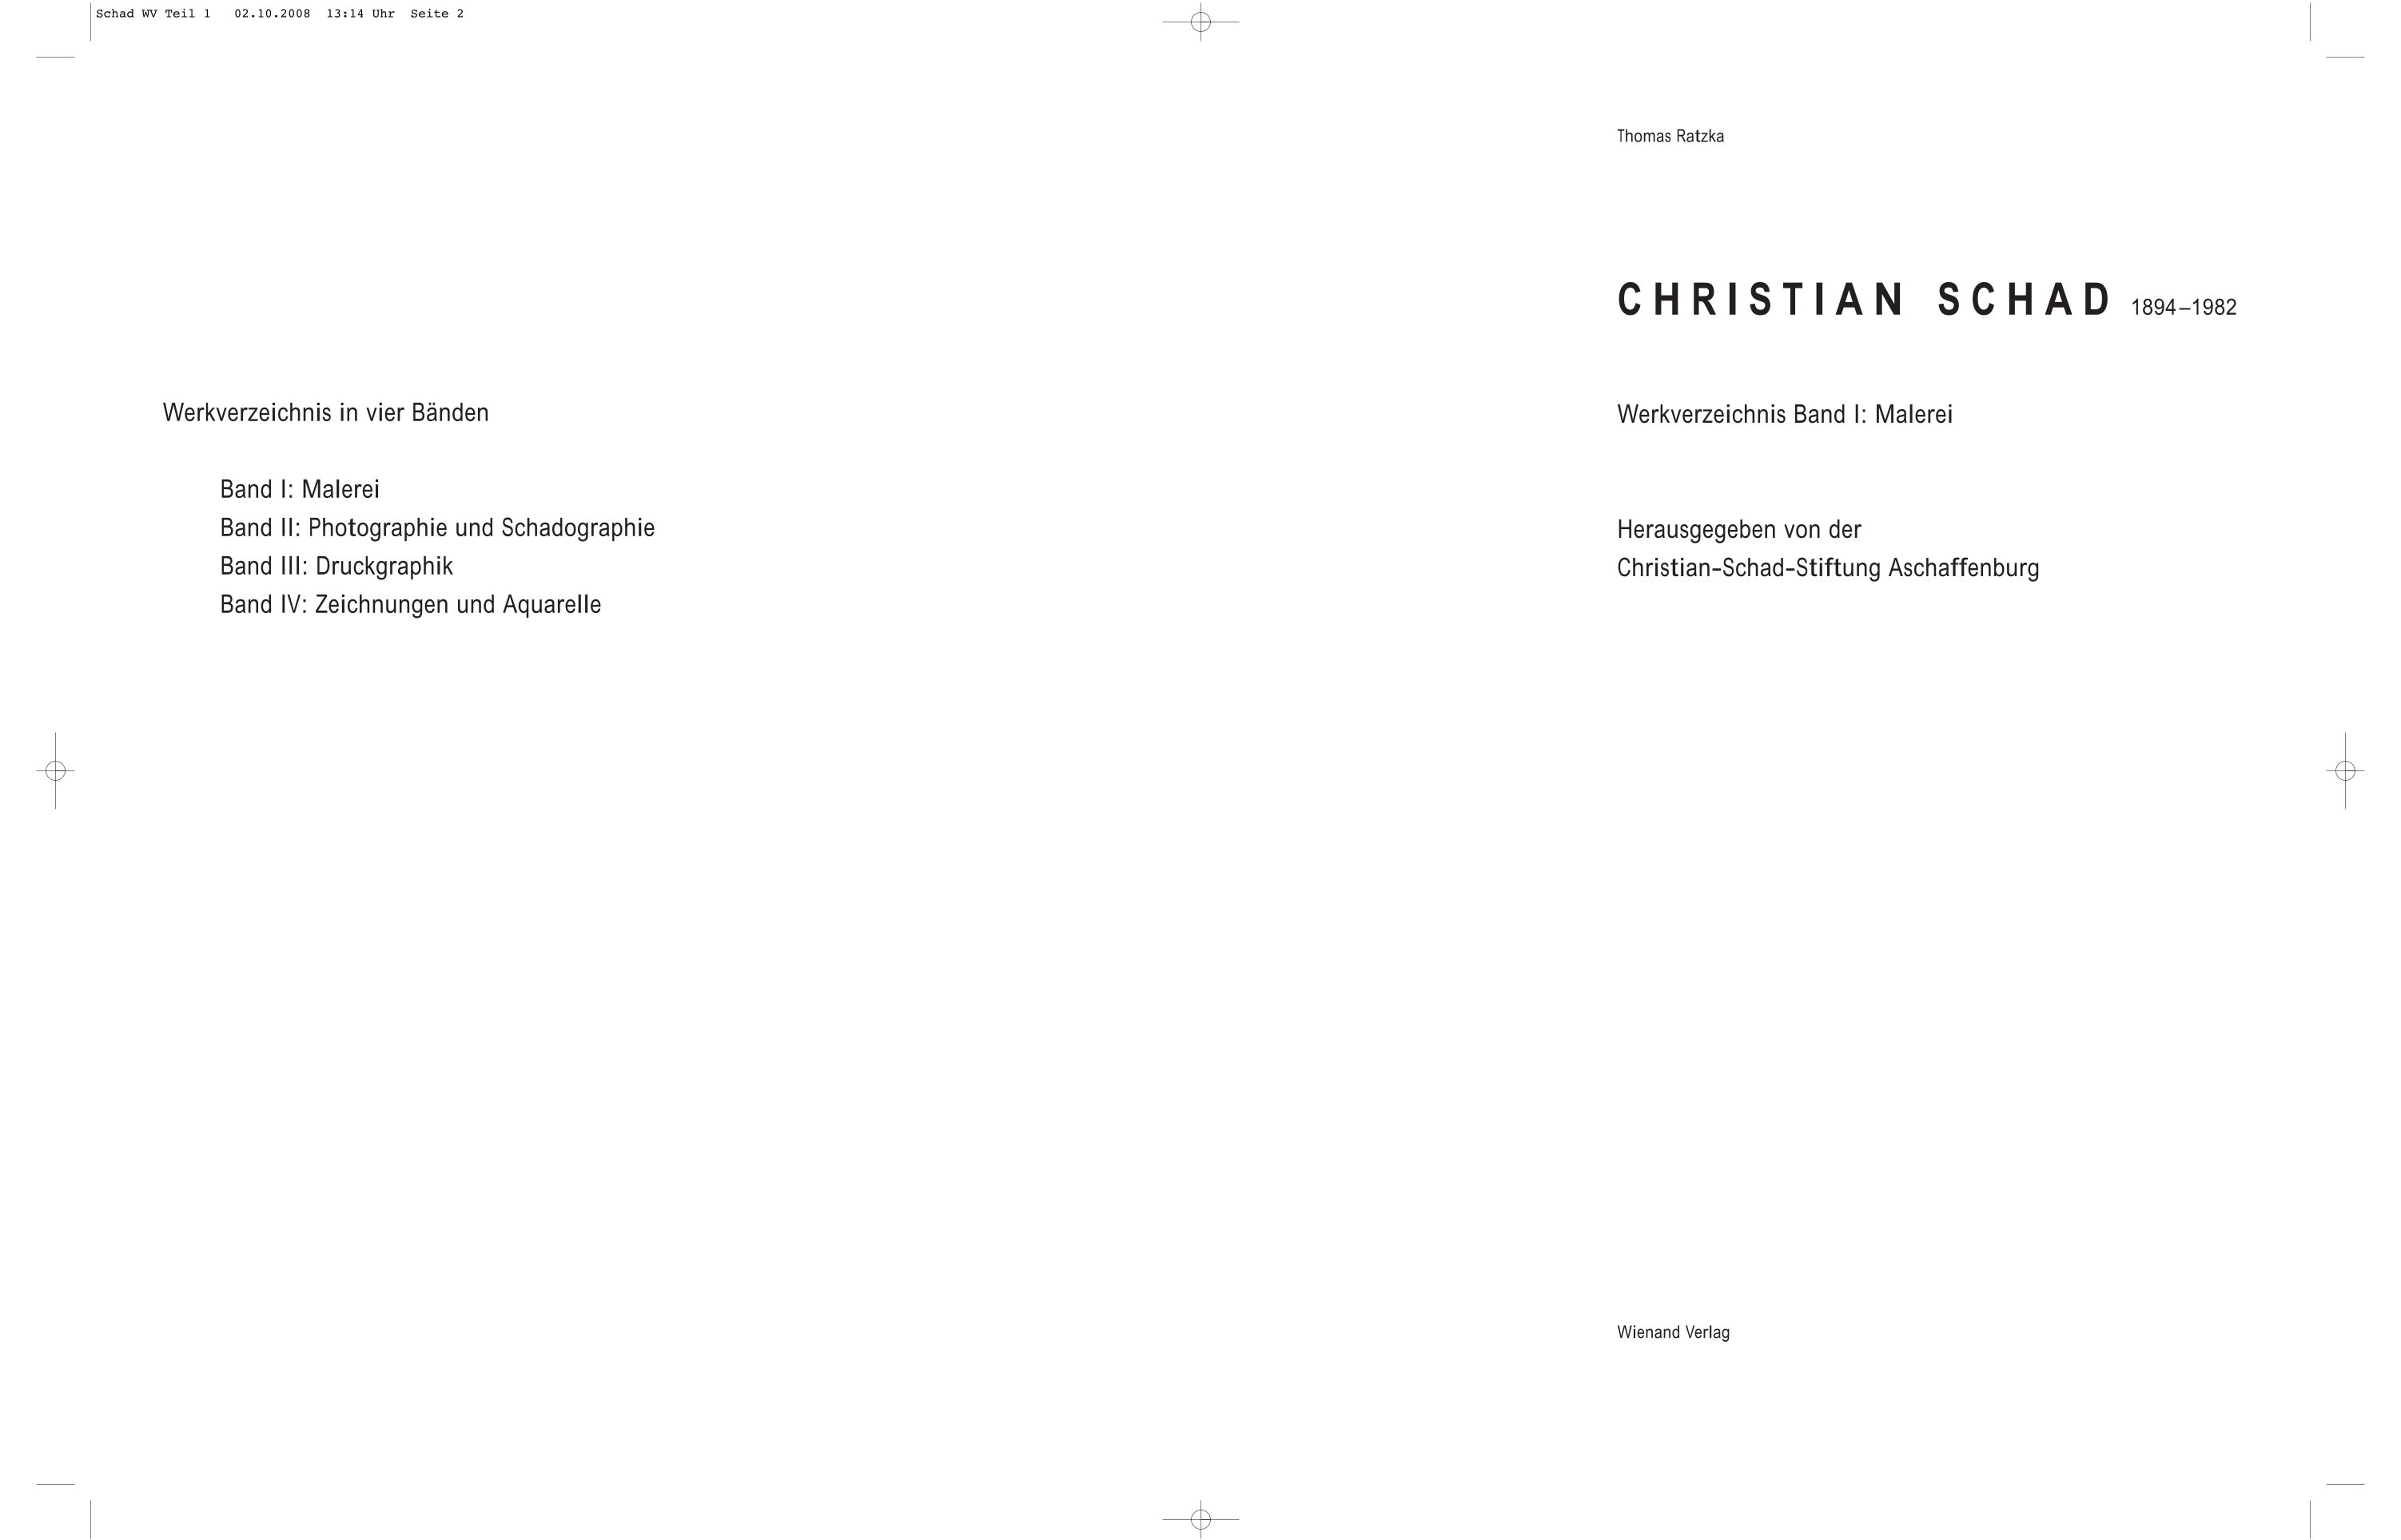 Christian Schad | Werkverzeichnis Band I: Malerei